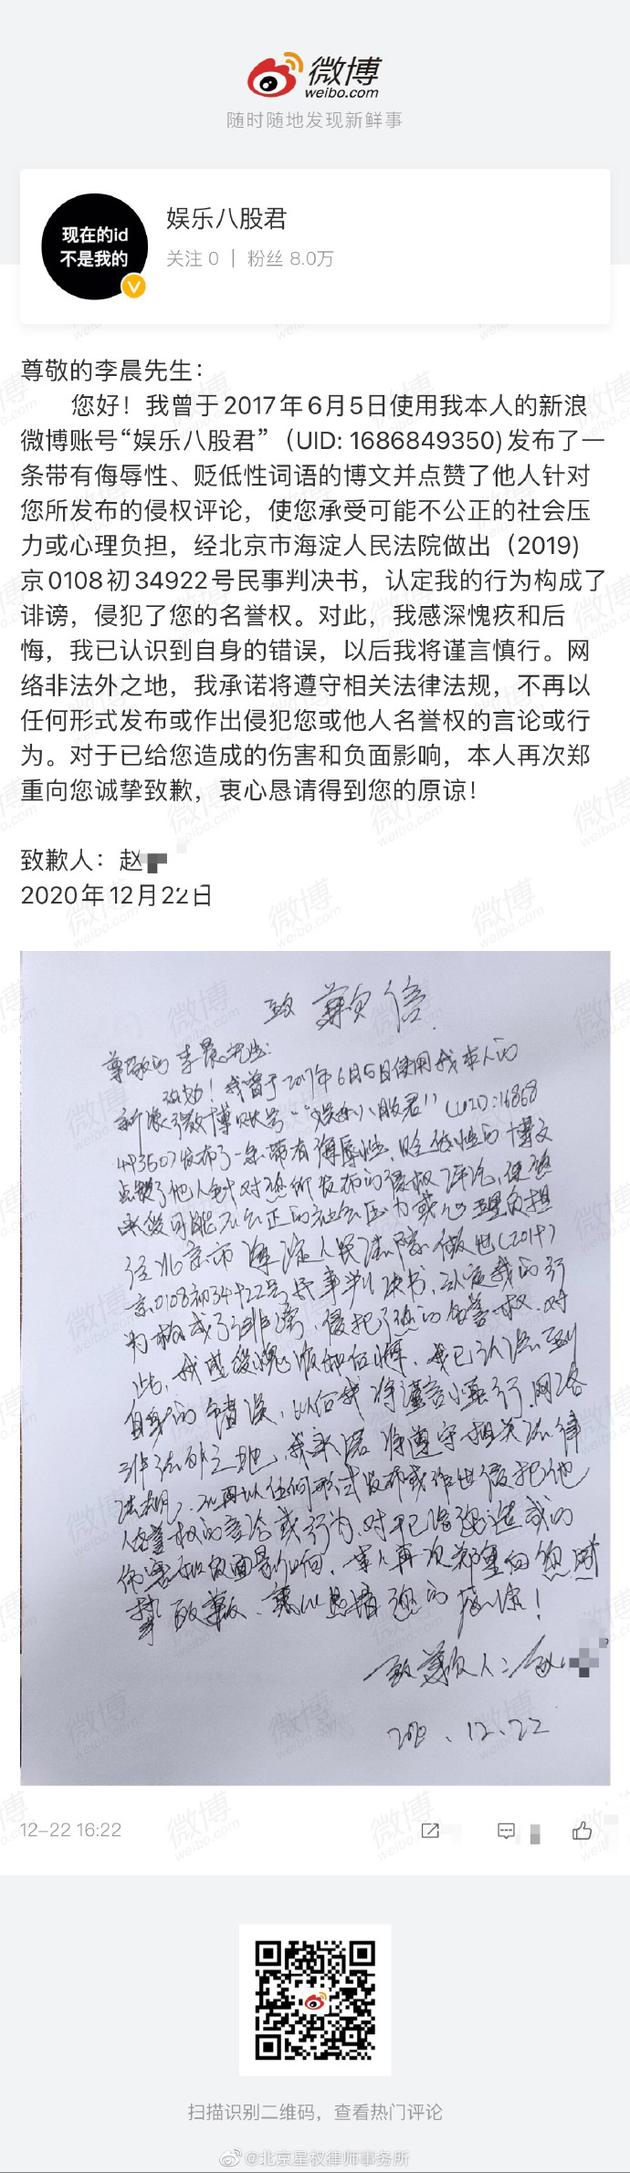 李晨名誉权受损案胜诉 被告手写道歉信公开致歉